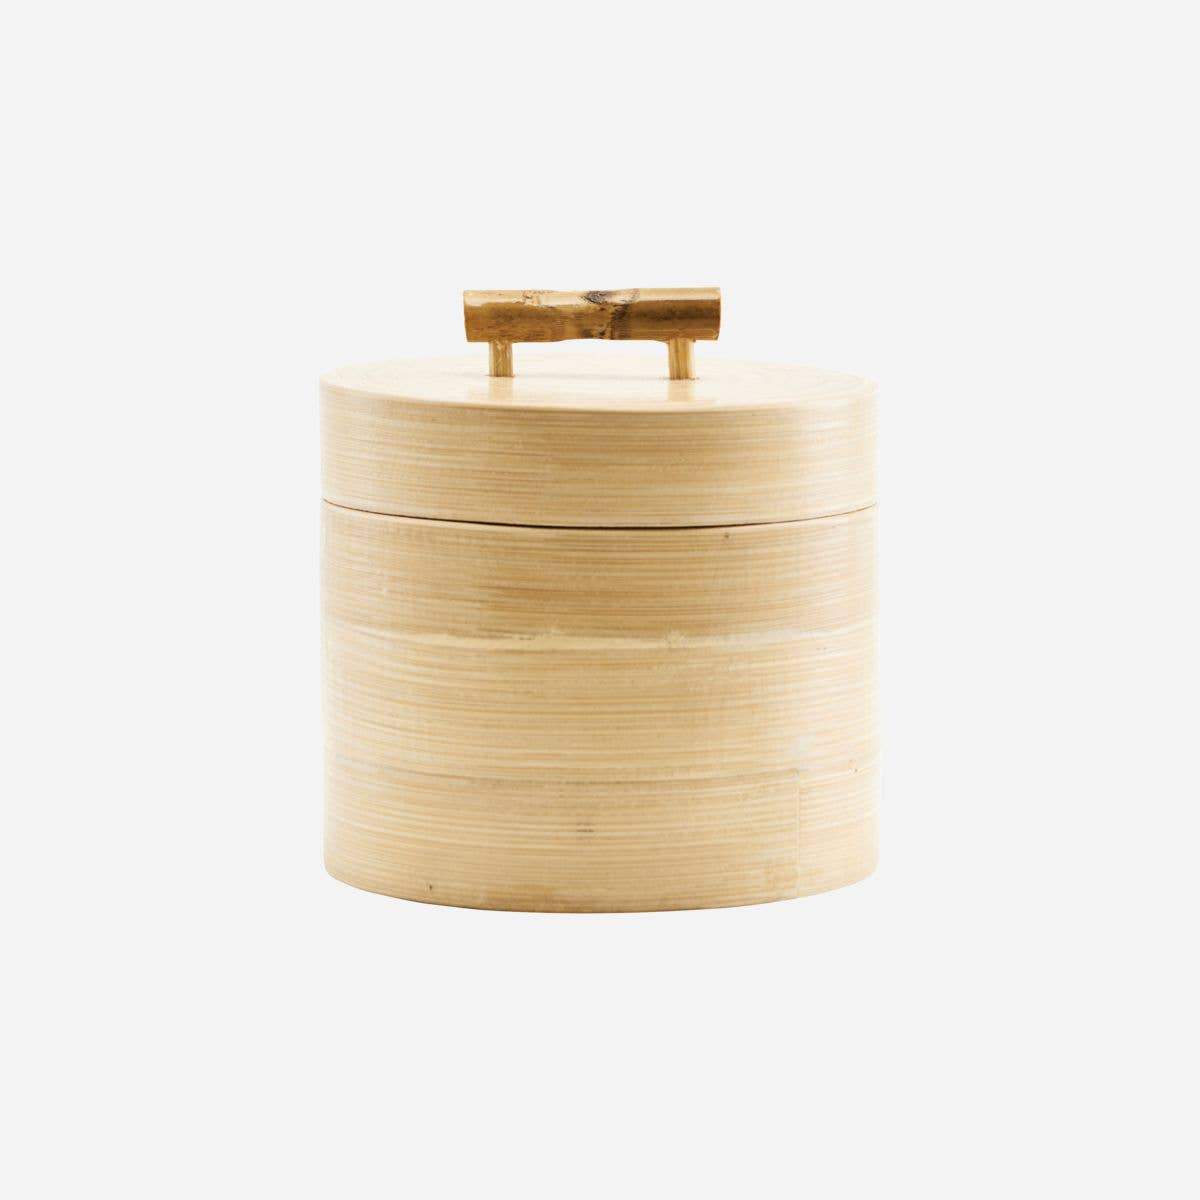 Bamboo Lidded Basket